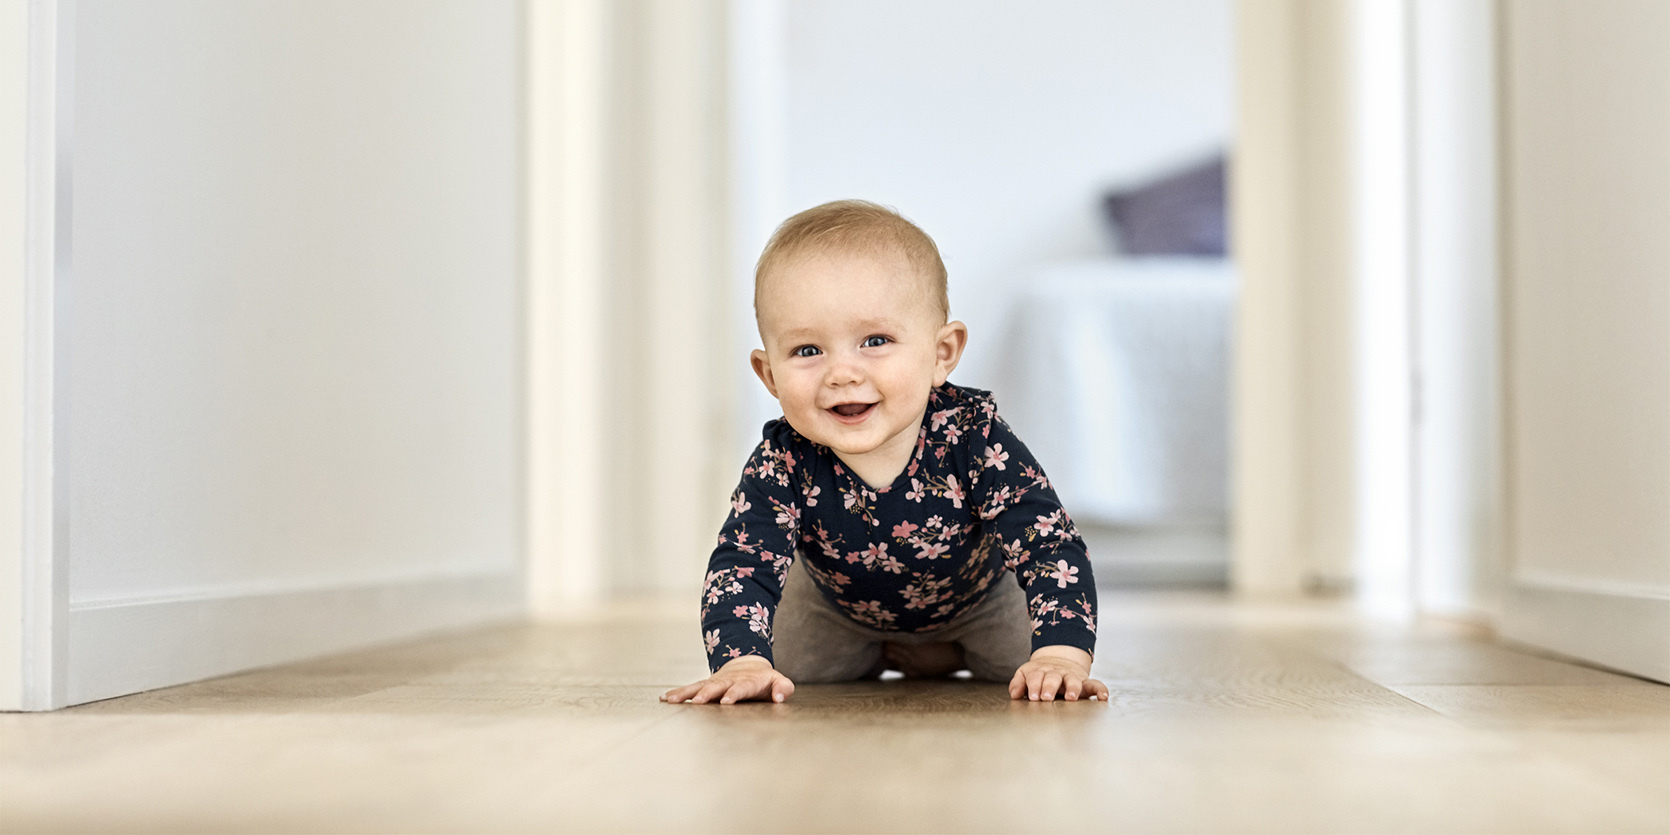 Co zagraża bezpieczeństwu niemowlaka w domu?